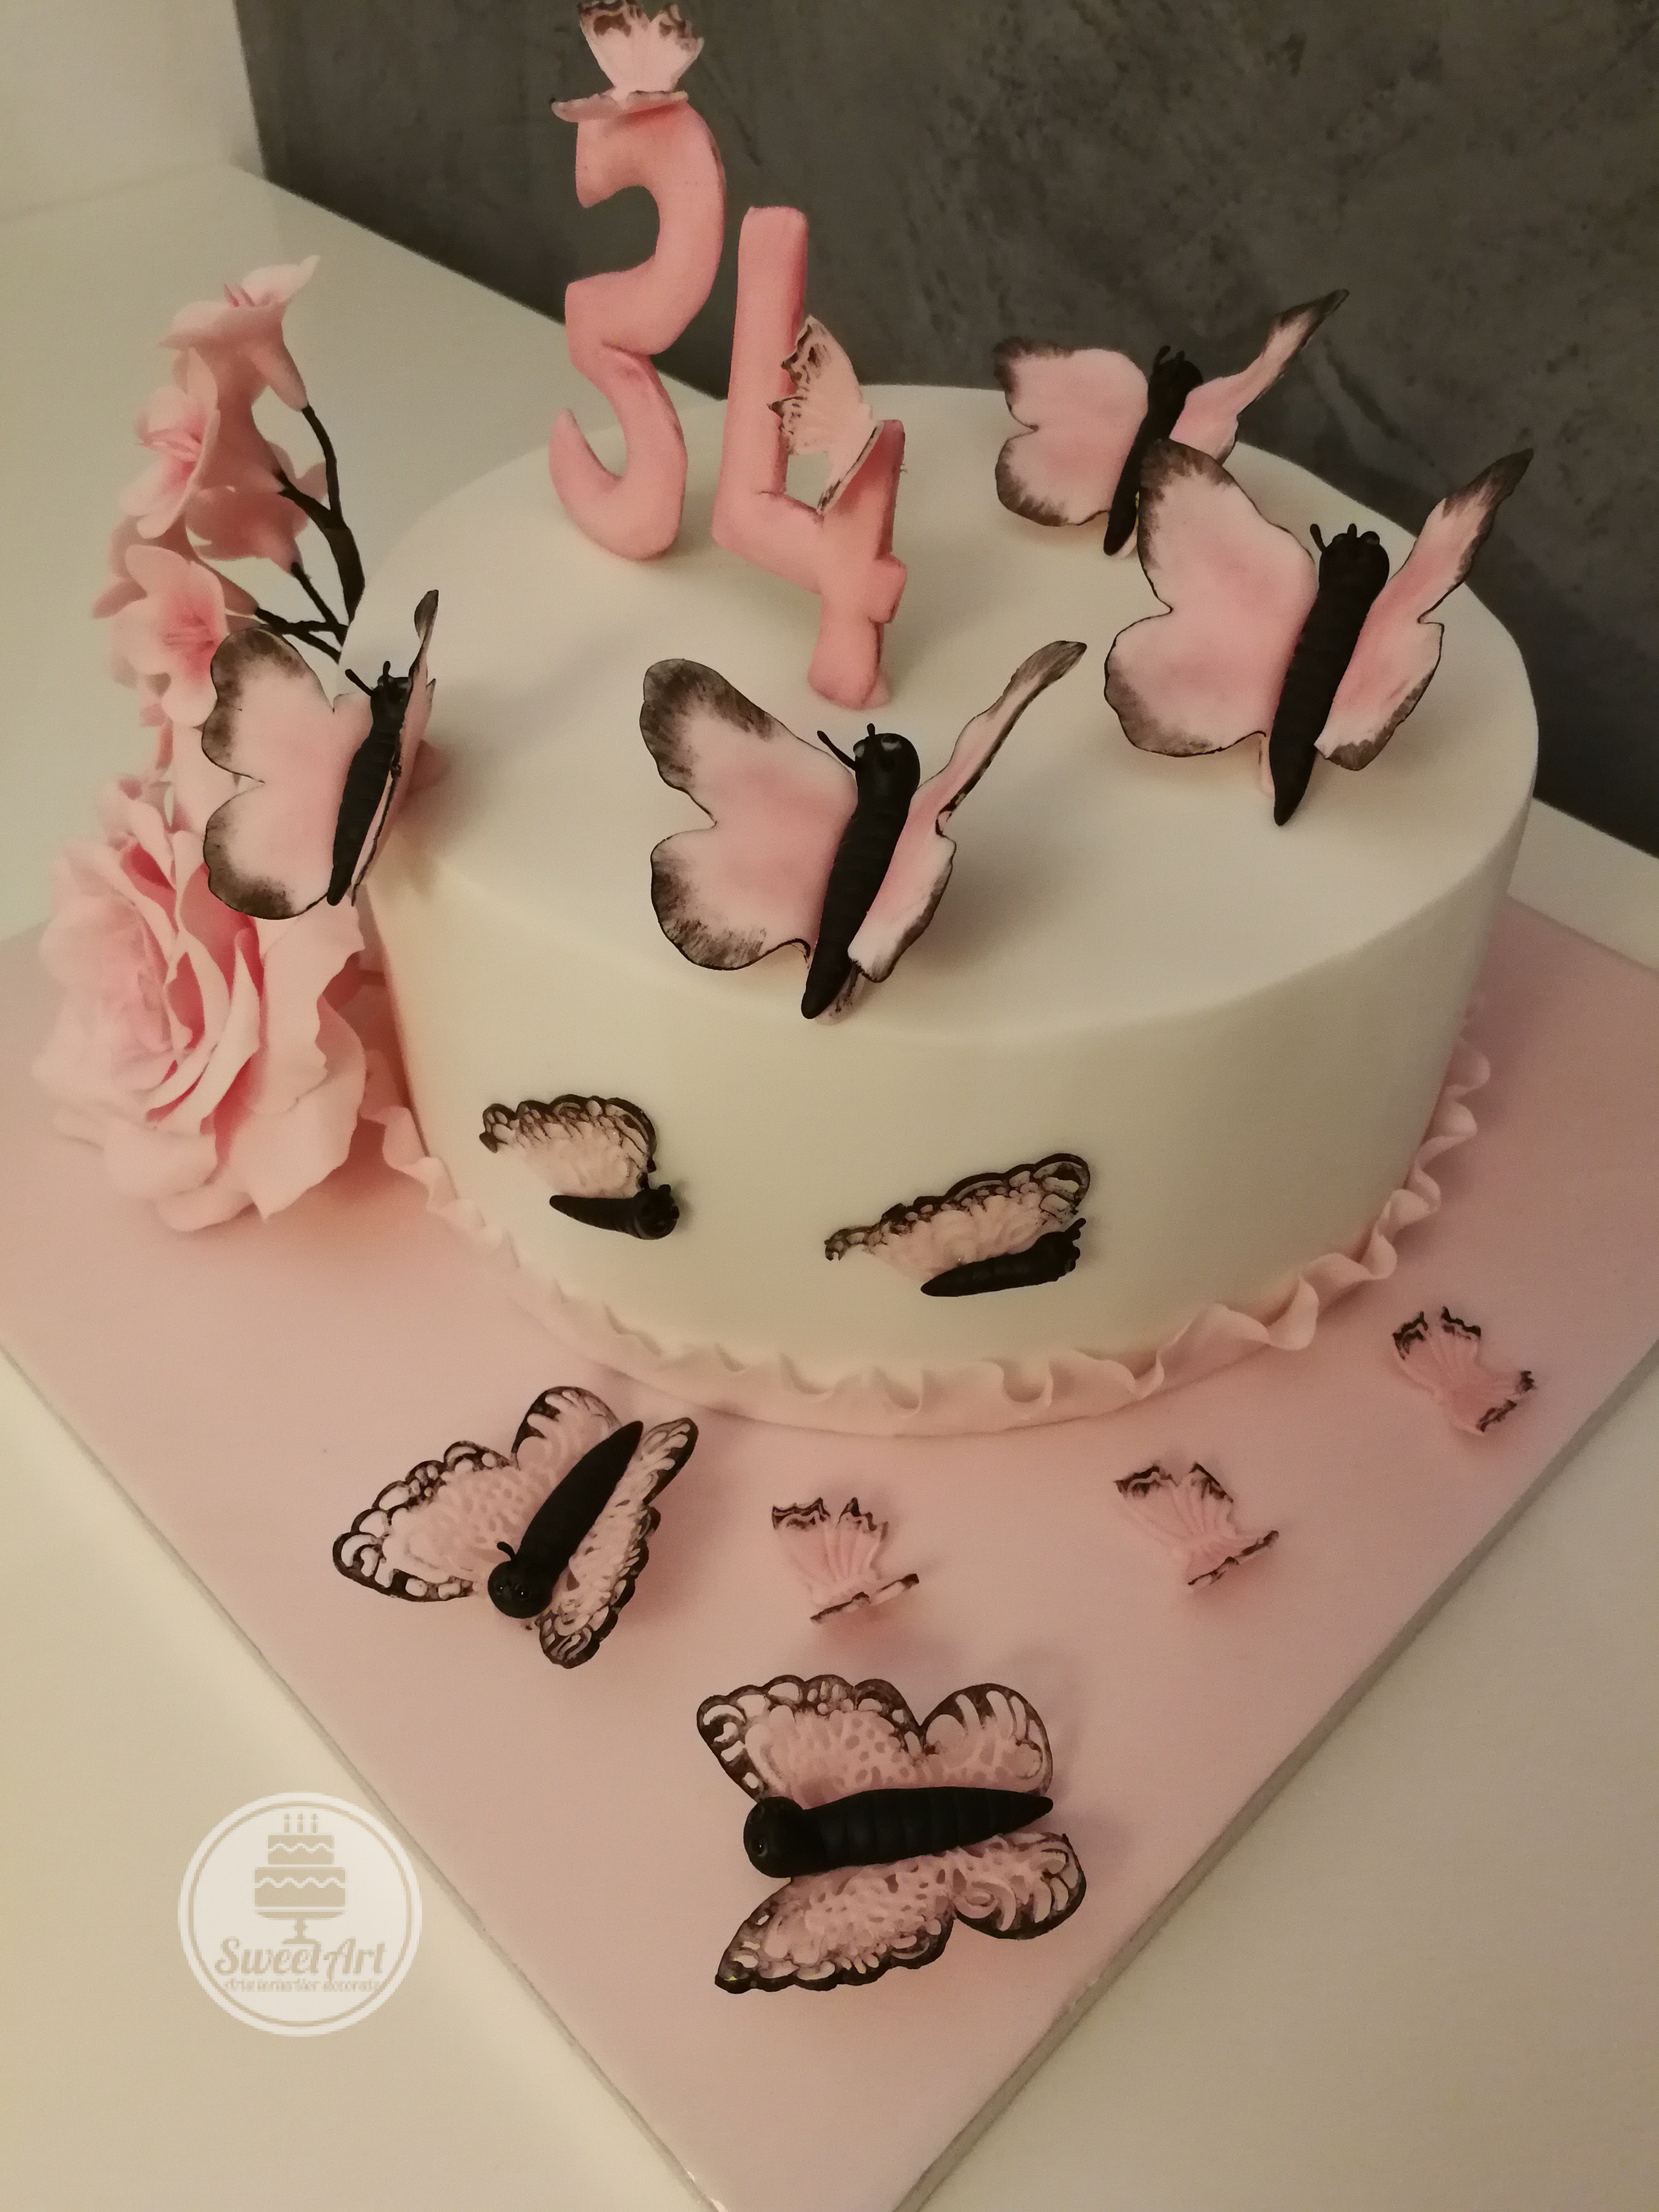 Tort cu fluturi și flori: fluturi fluturași simpli și dantelați roz cu negru, un trandafir roz și o crenguță cu flori de cireș, tort alb-roz-negru cu volănaș - ruffle roz